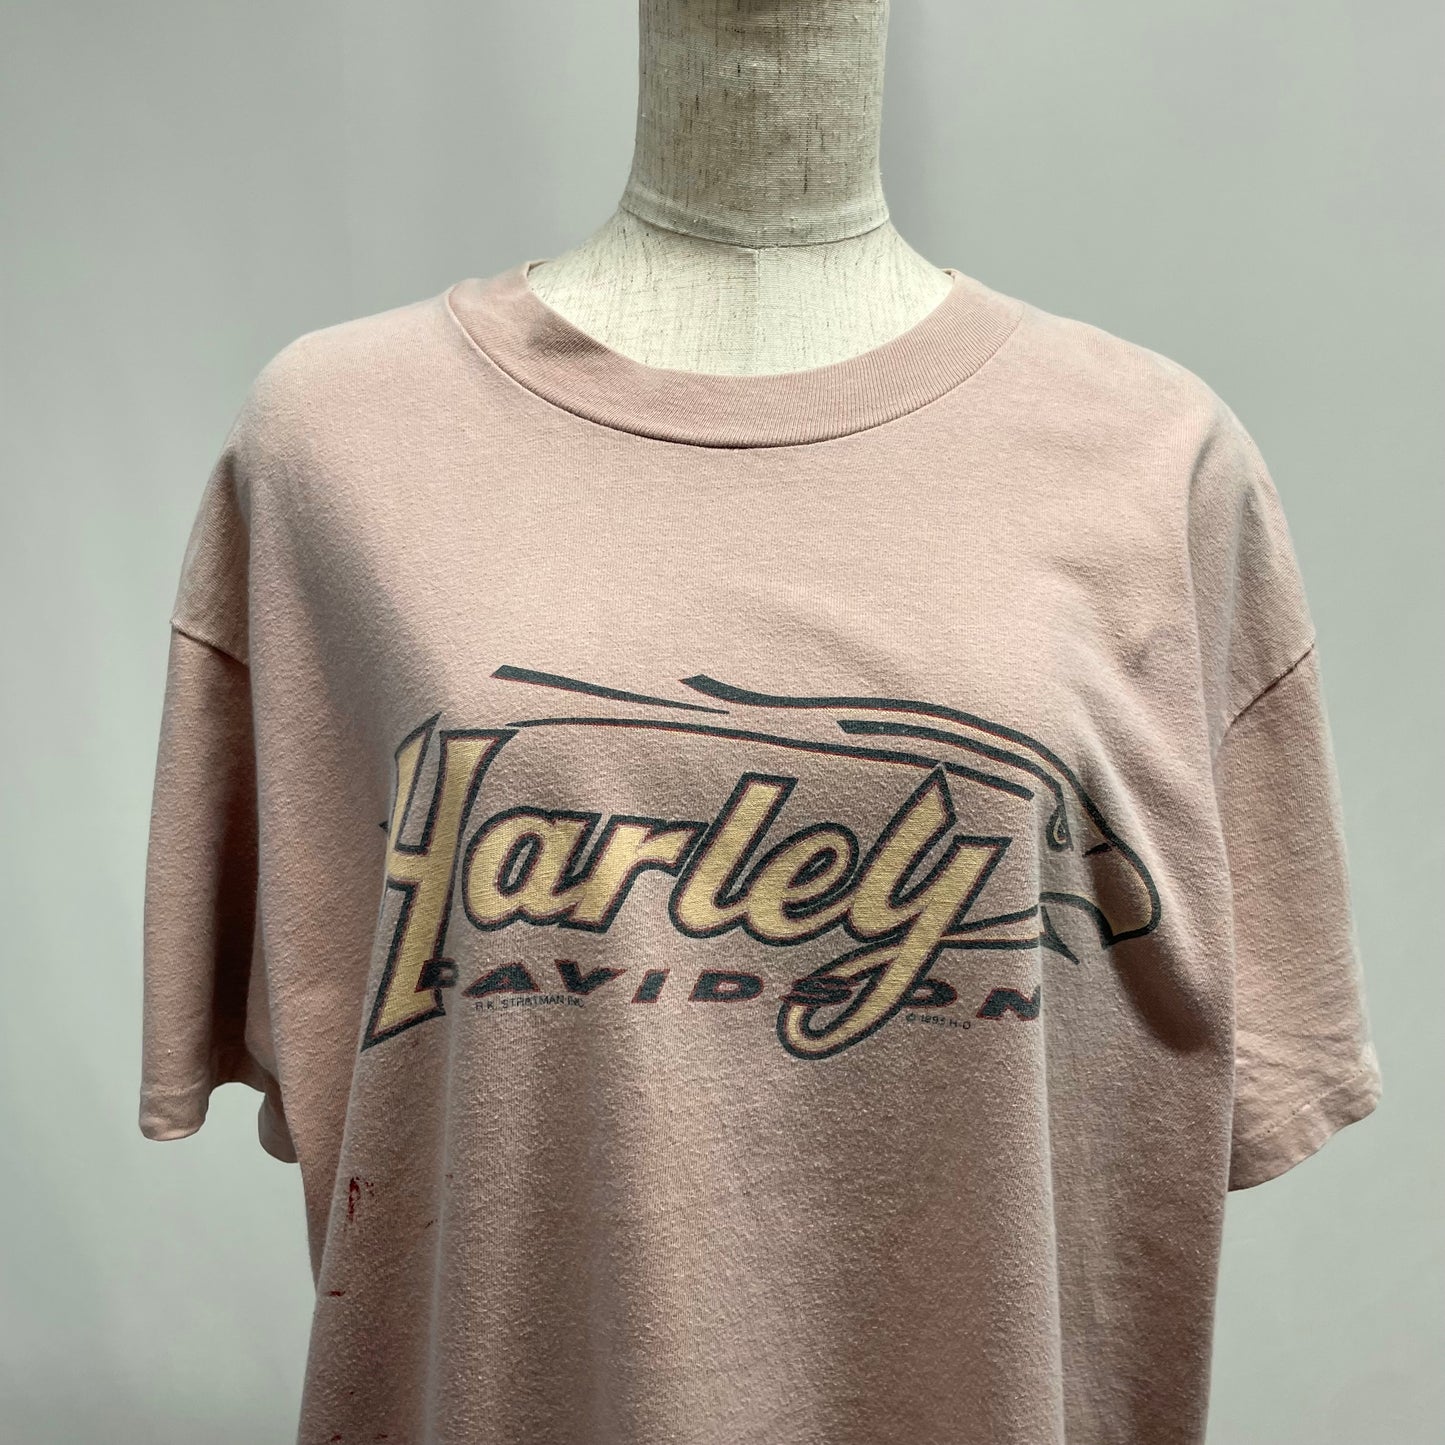 90's "Harley Davidson" print t-shirt